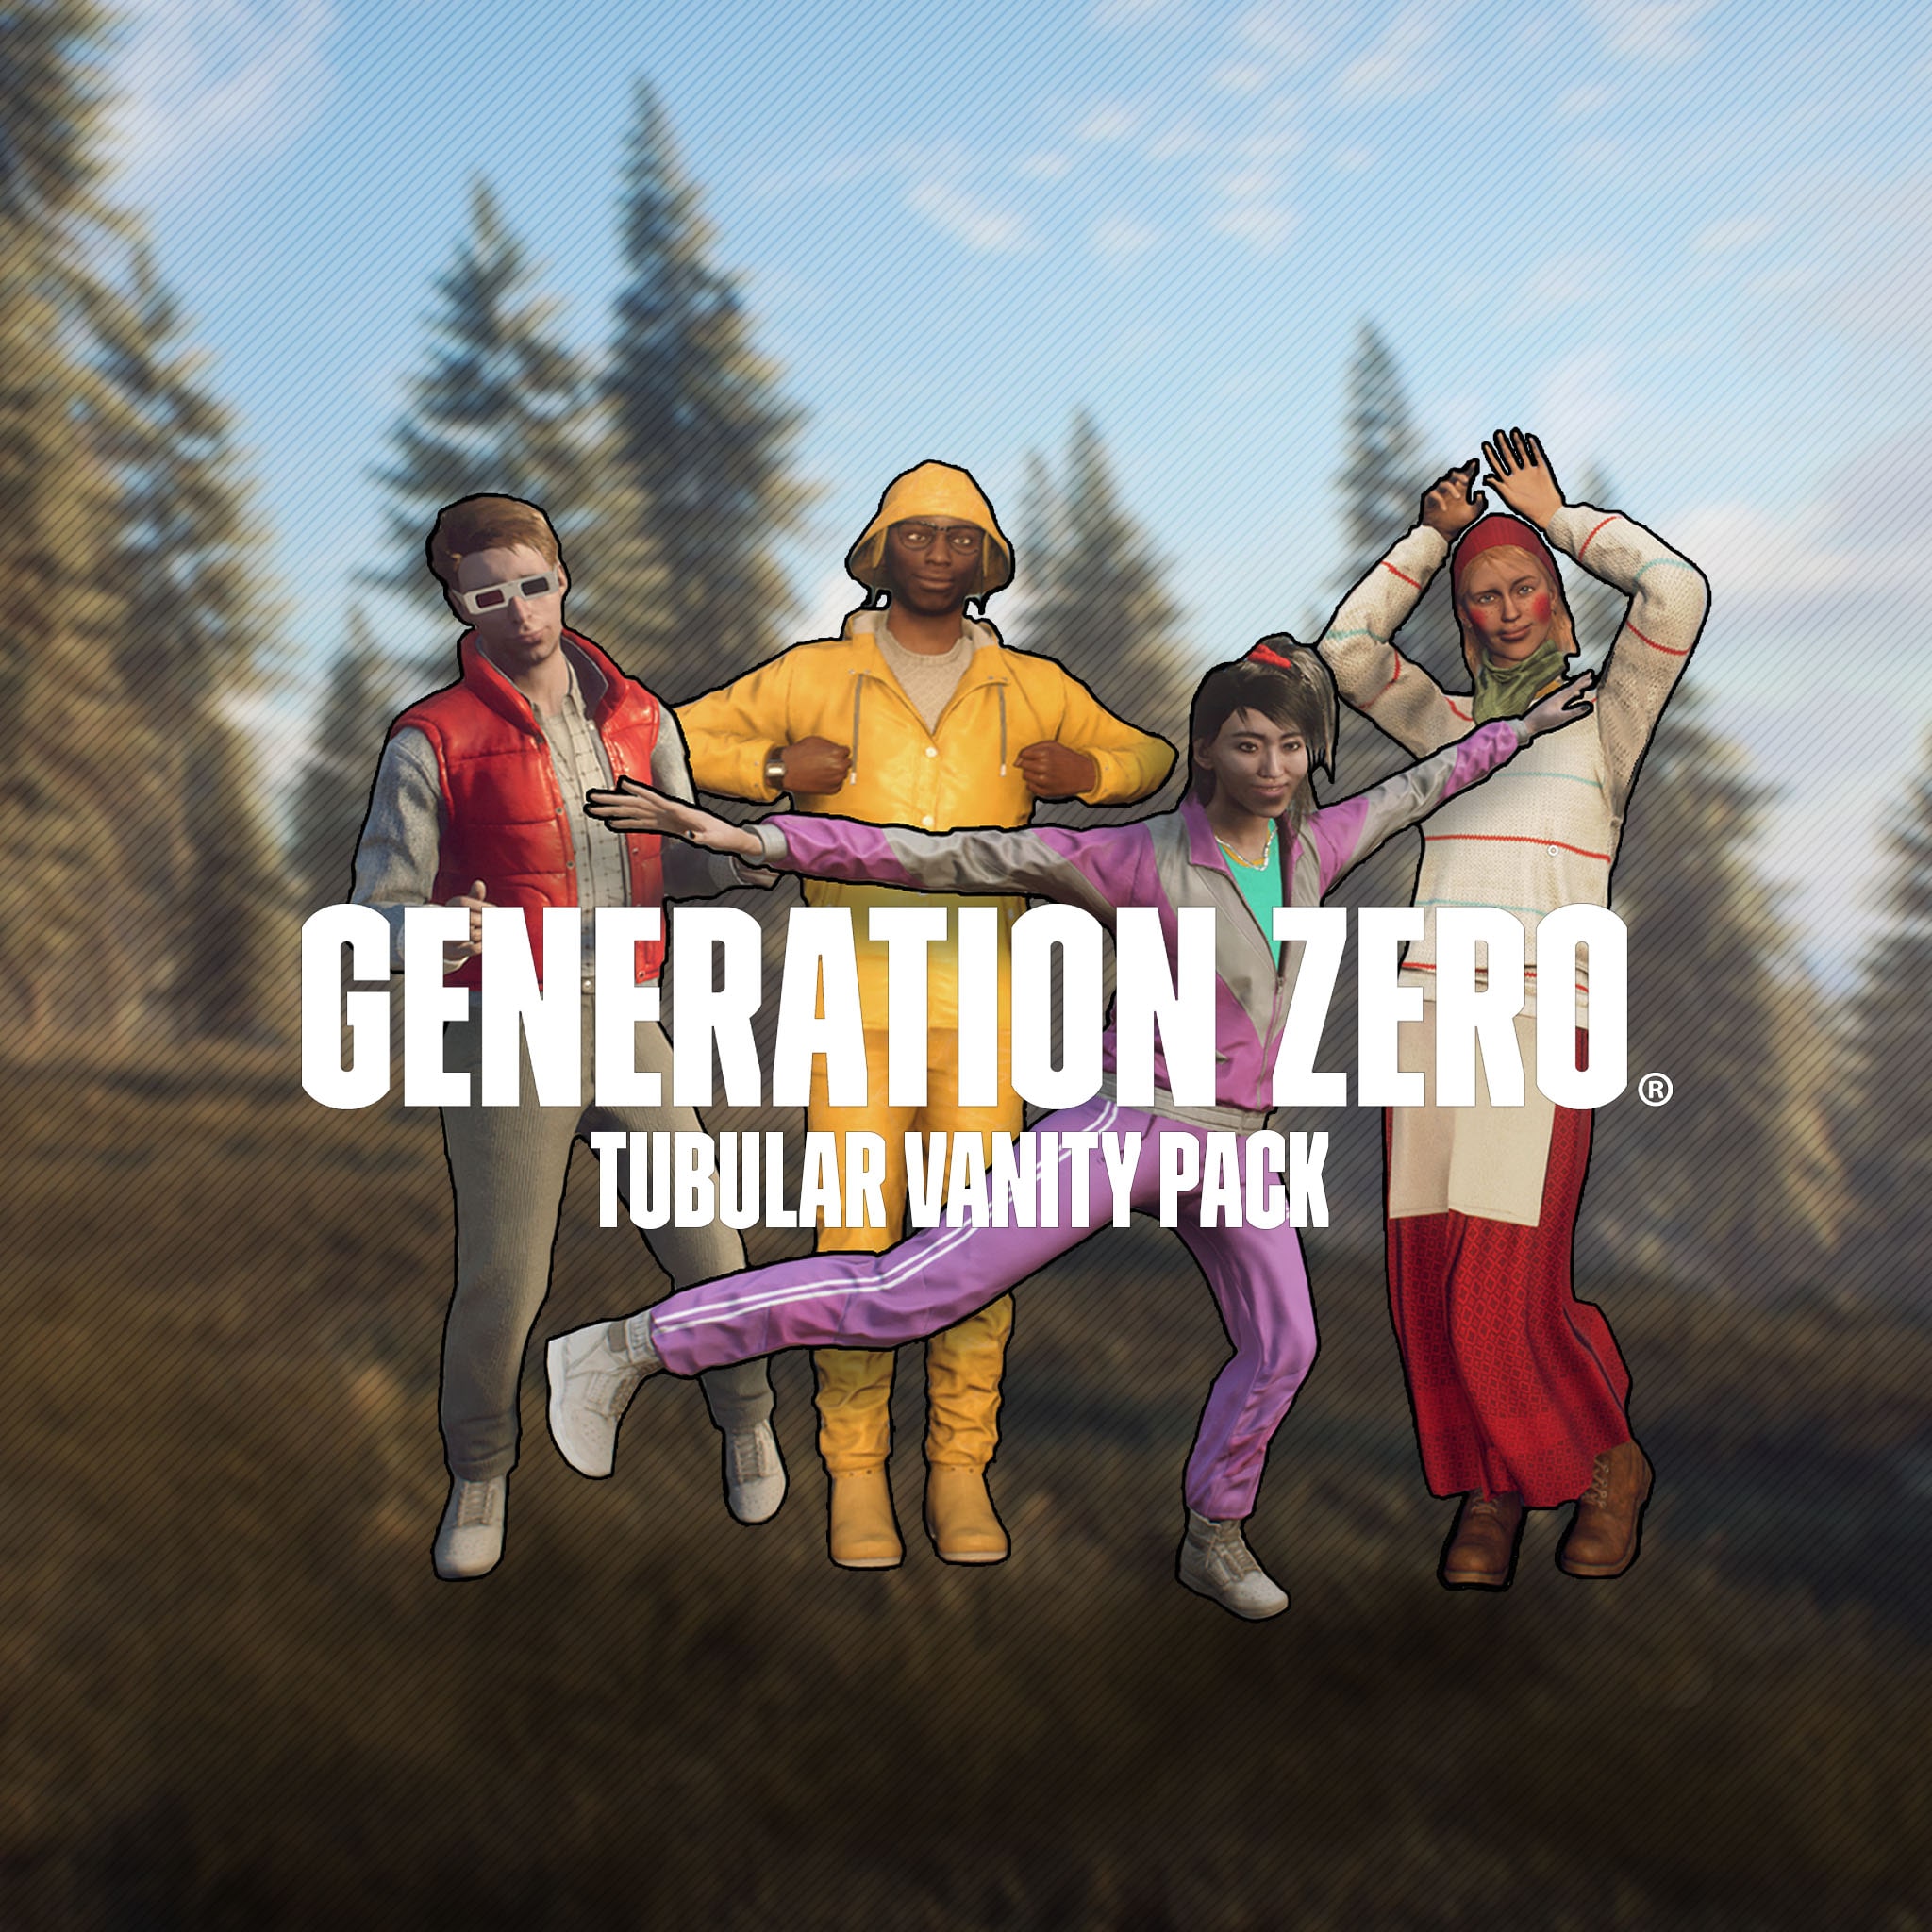 Generation Zero® - Tubular Vanity Pack (中日英韓文版)